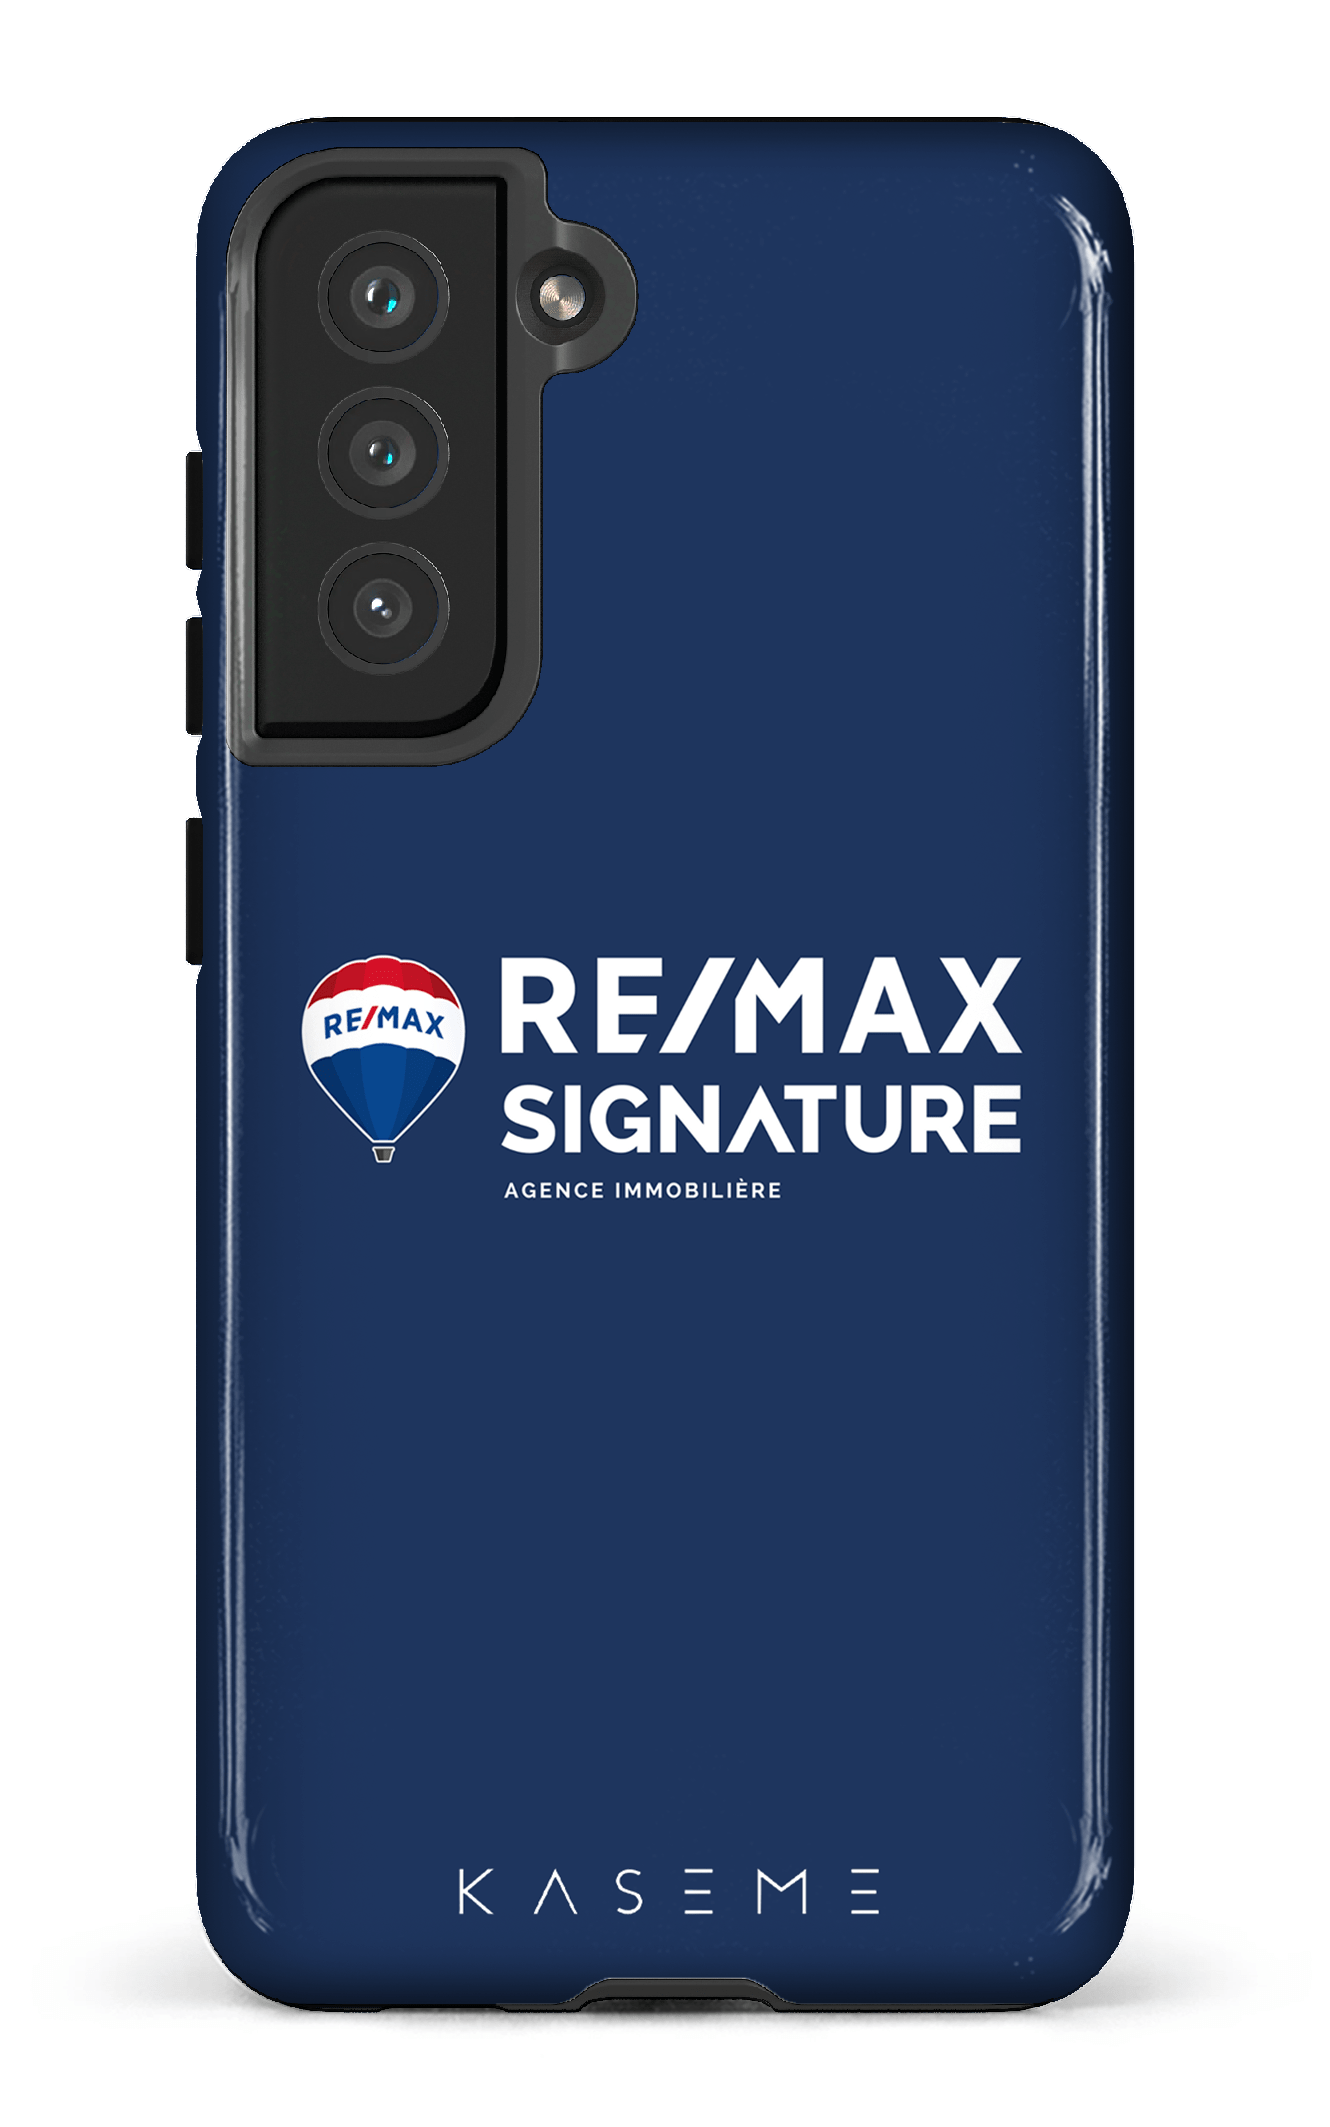 Remax Signature Bleu - Galaxy S21 FE